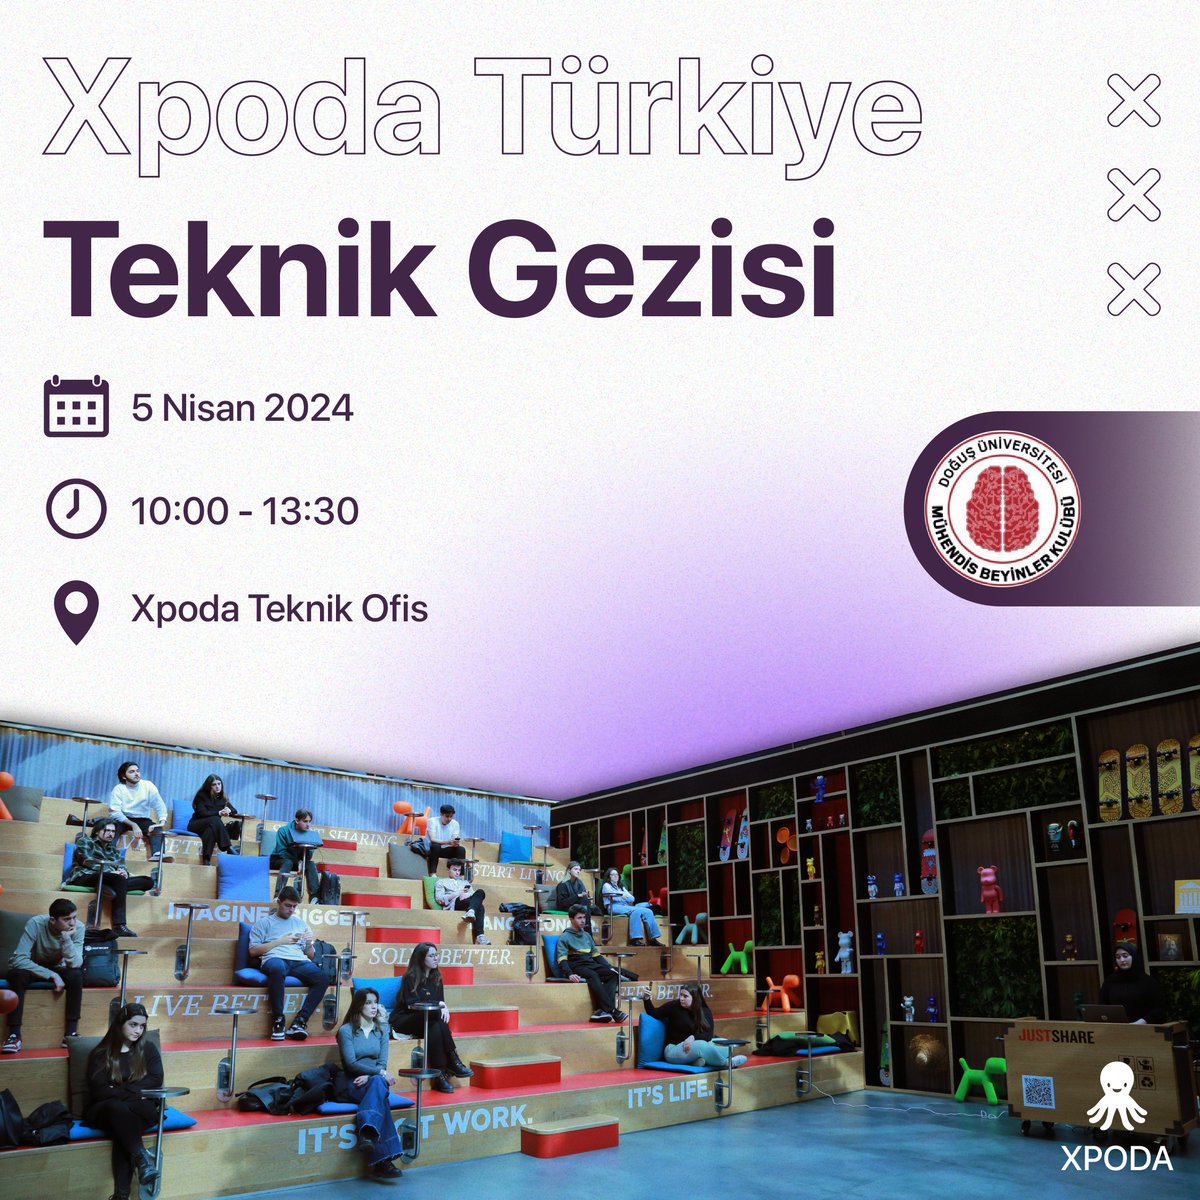 Türkiye'nin lider kodsuz yazılım platformu Xpoda olarak, no code dünyasının kapılarını sizin için aralıyoruz. Kodsuz yazılımı yerinde deneyimleyebilmeleri için Doğuş Üniversitesi Mühendis Beyinler Kulübü'nü Xpoda Teknik Ofis’e davet ediyoruz. #xpoda #nocode #dijitaldönüşüm